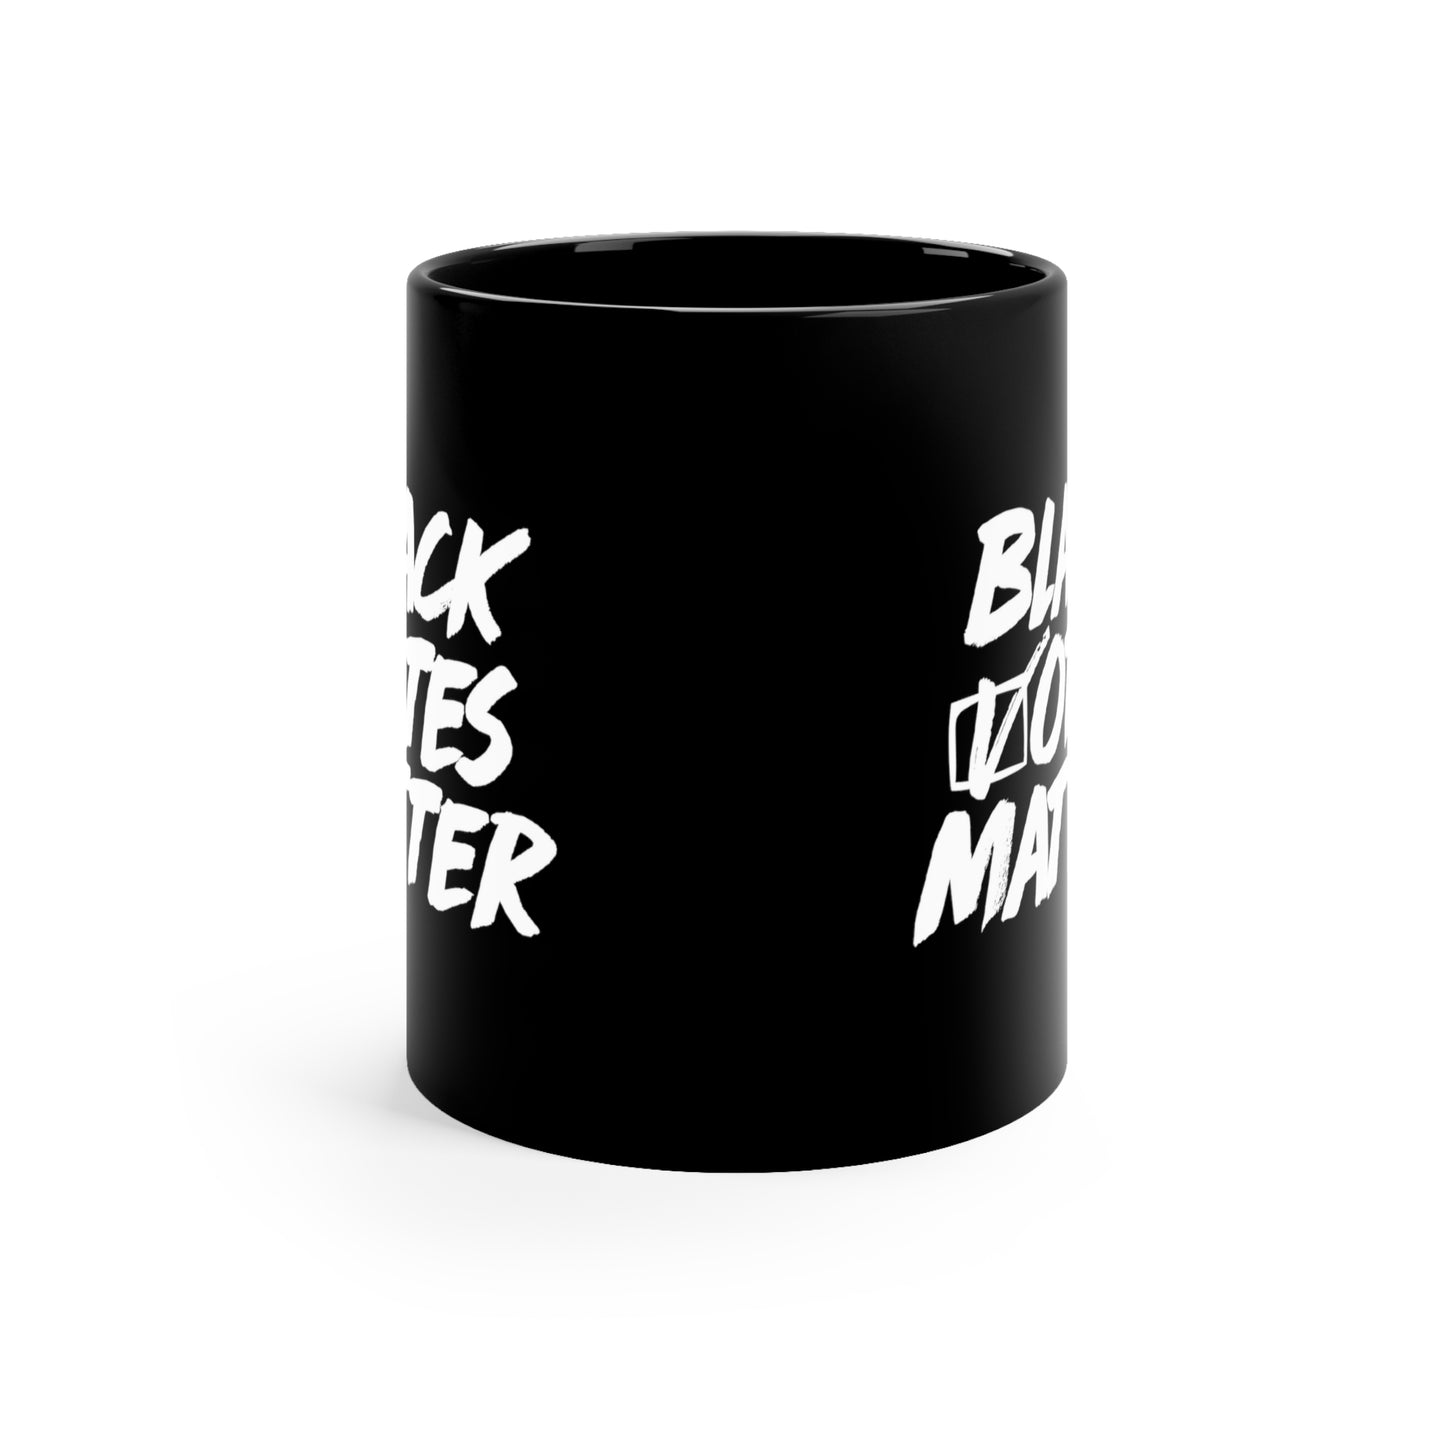 “Black Votes Matter (white text)” 11 oz. Mug